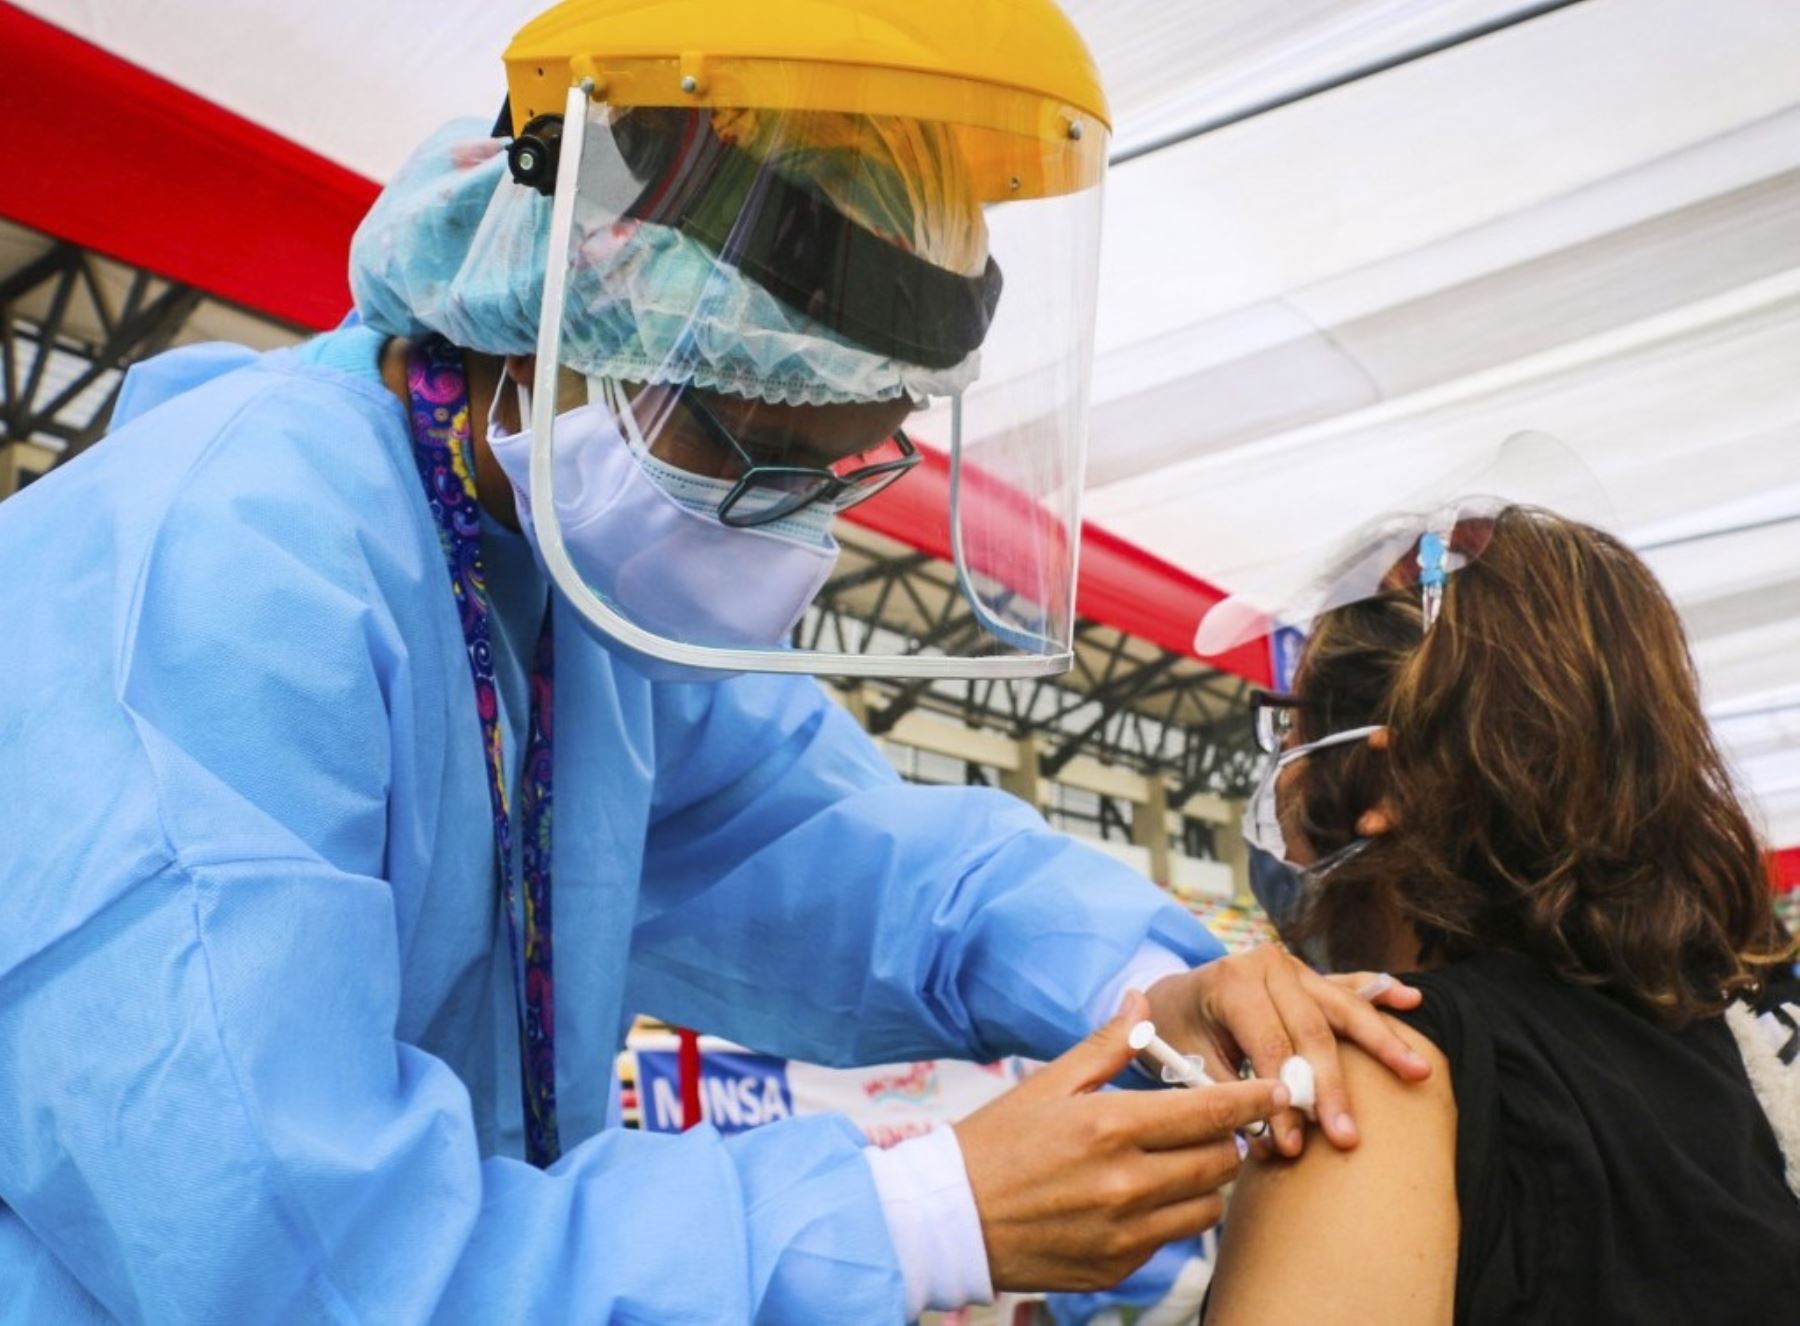 Mañana sábado 7 y el domingo 8 de agosto se desarrollará el Vacunatón en las nueve provincias de la Región Lima. El objetivo es inocular a más de 40,000 personas mayores de 40 años. Foto: ANDINA/difusión.